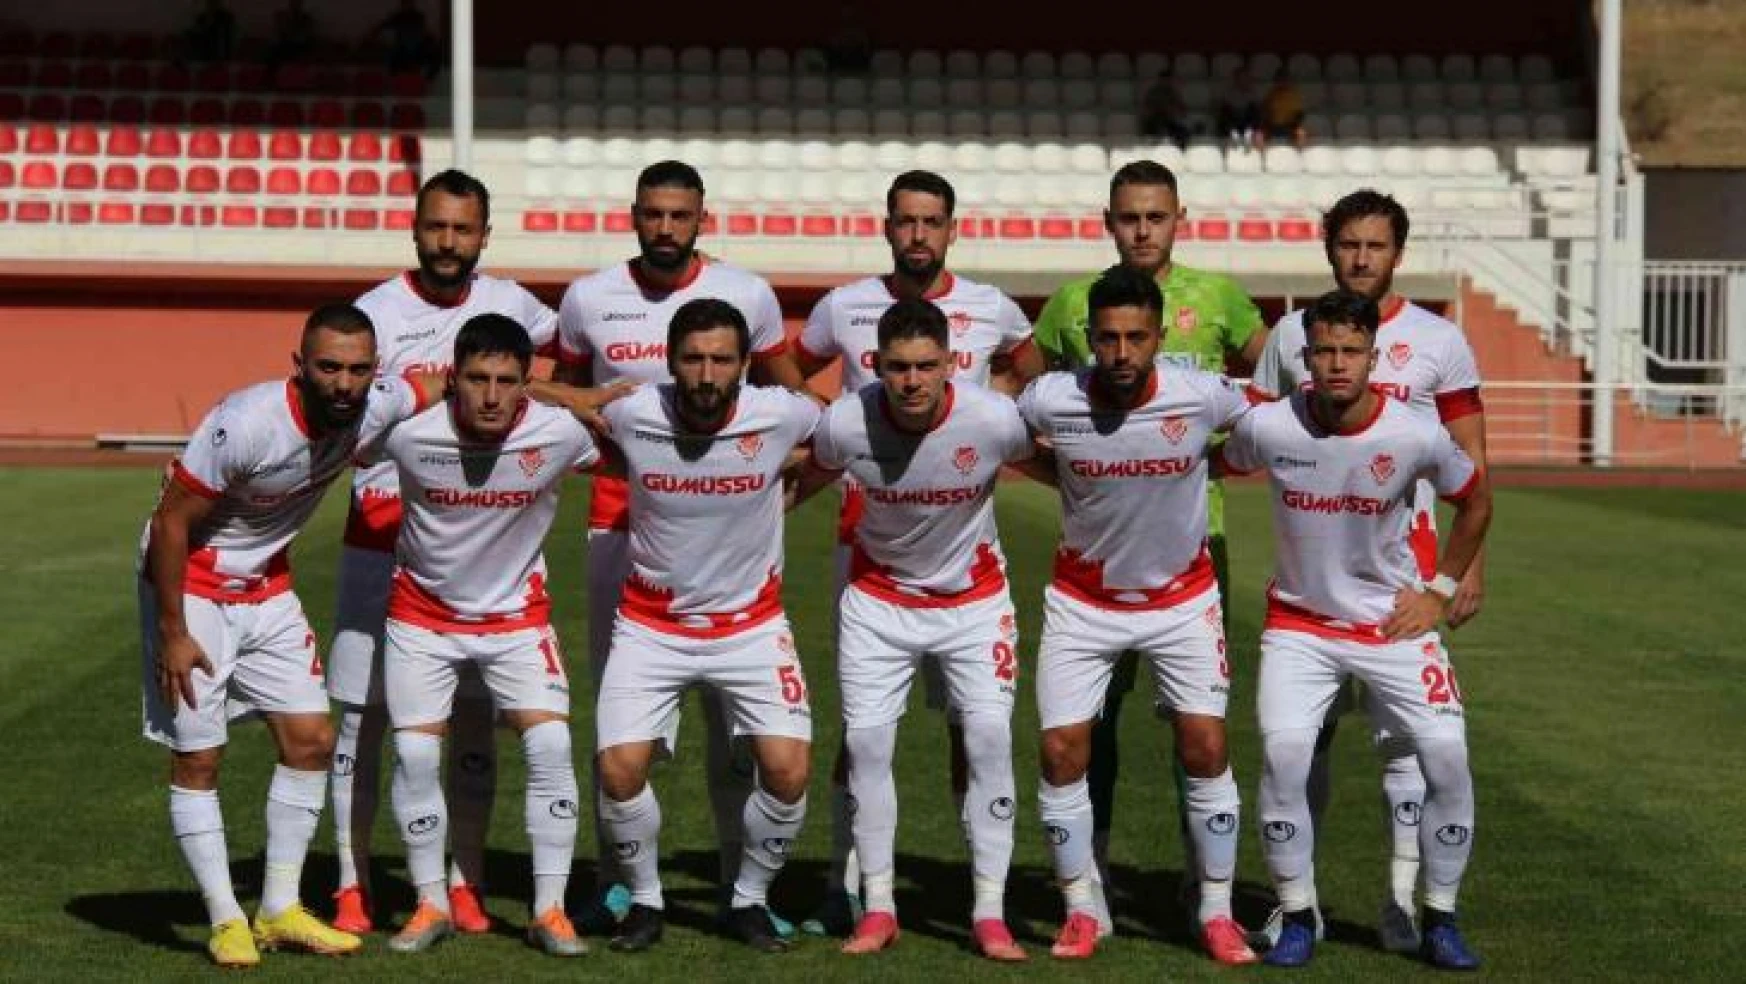 TFF 3. Lig: Gümüşhane Sportif Faaliyetler: 0 - Alanya Kestelspor: 0